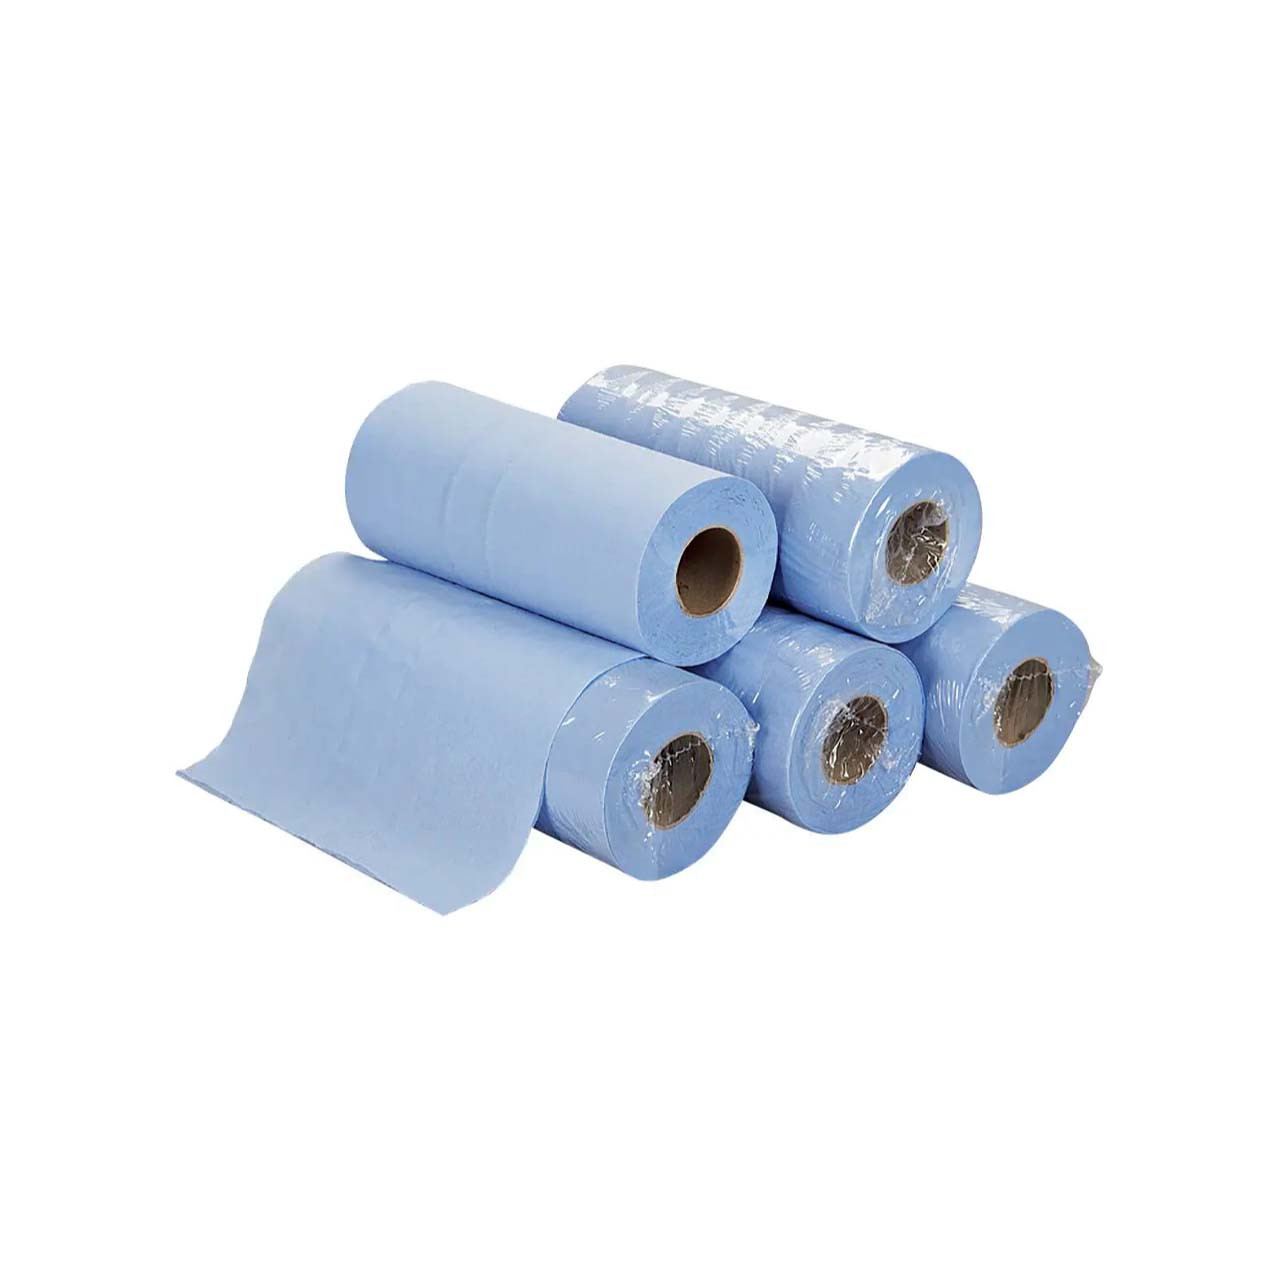 Essentials Hygiene Roll H2B240 2 Ply - Box of 5 rolls